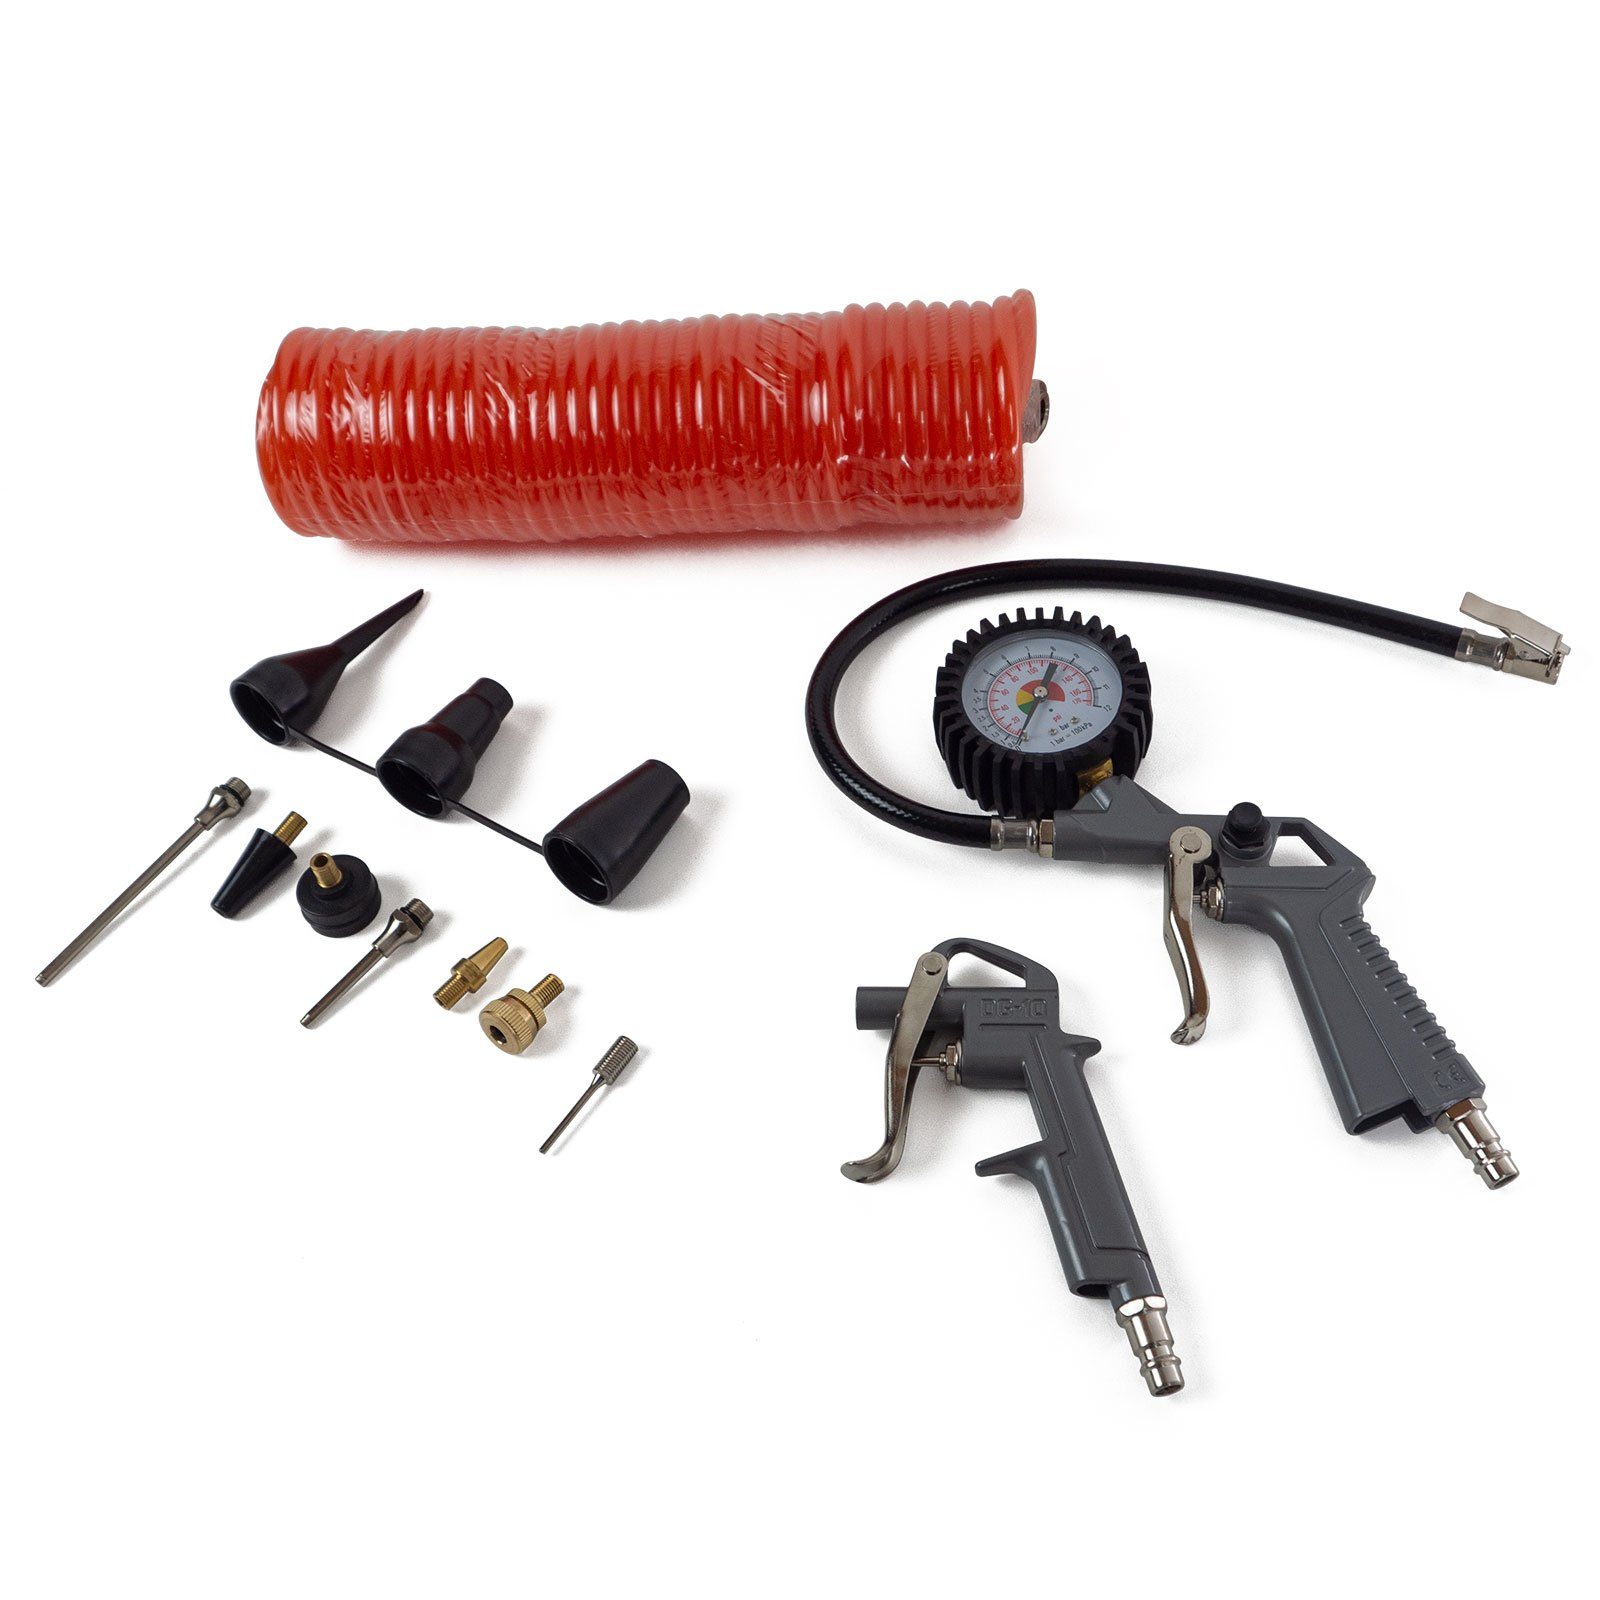 Scheppach Kompressor Zubehör Set | 8-teiliges Druckluftwerkzeug |  Farbspritzpistole, Sprüh- und Reinigungspistole, Reifenfüllmessgerät